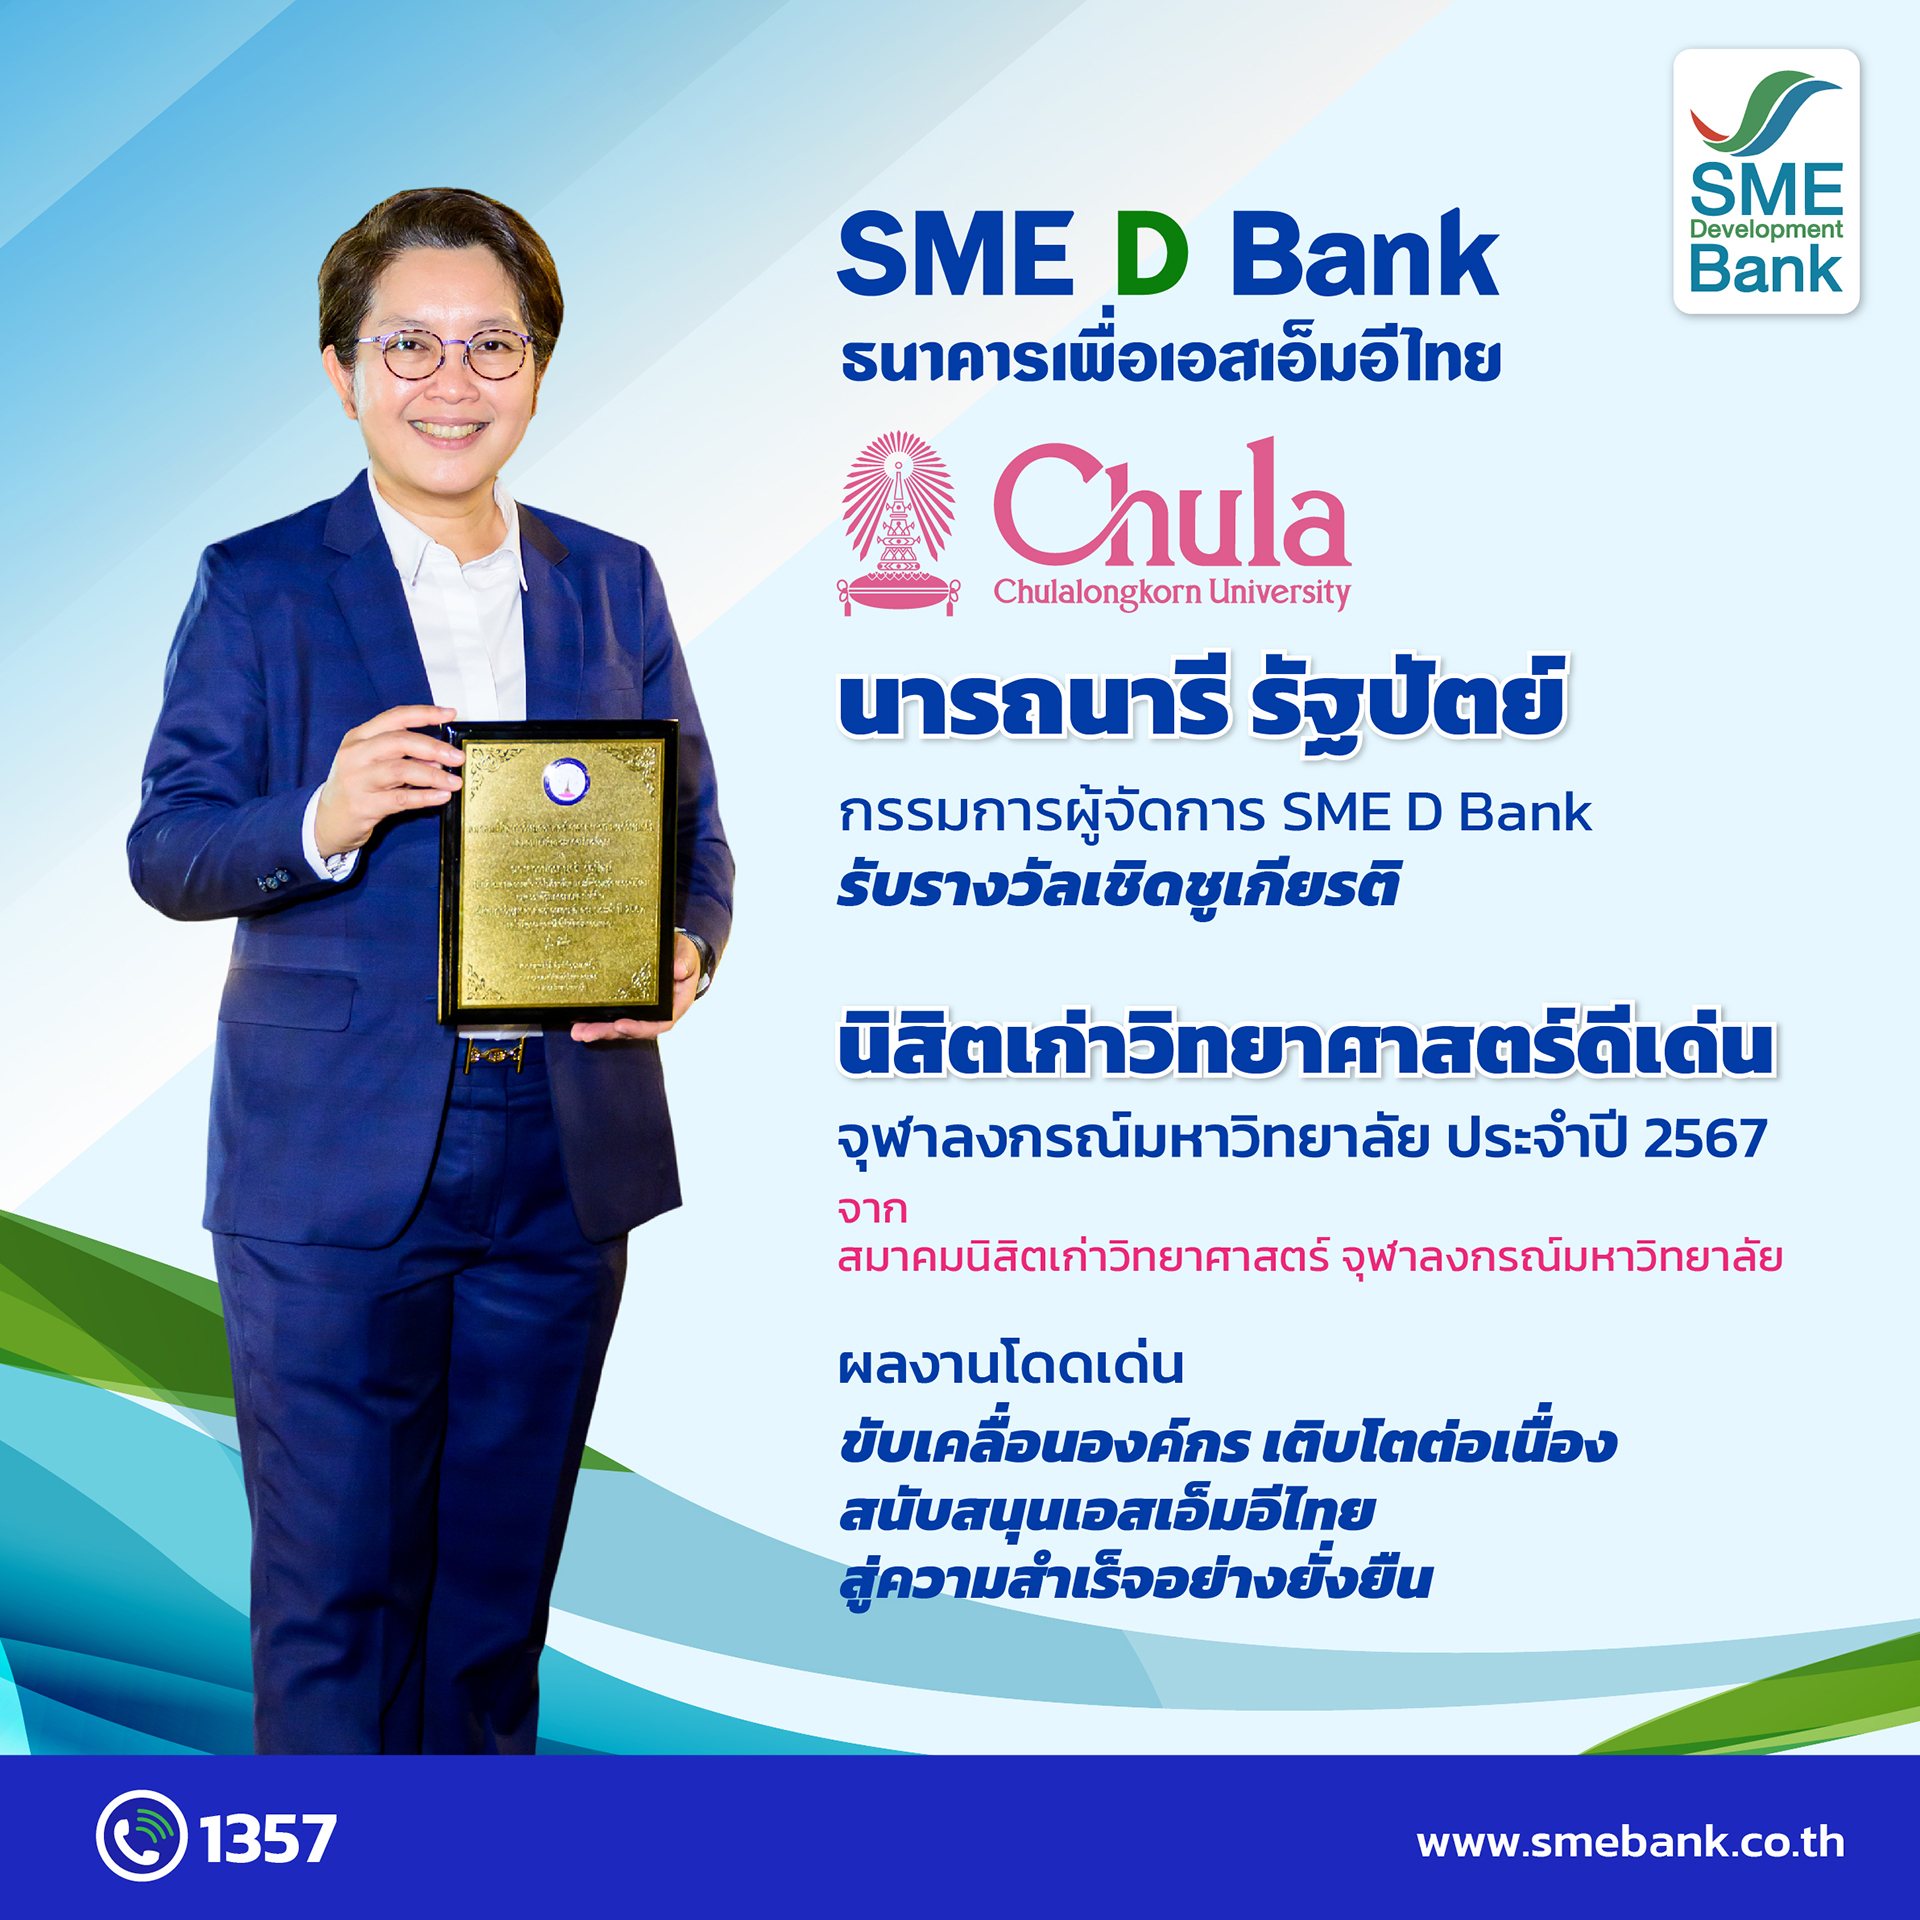 MD SME D Bank รับมอบโล่เชิดชูเกียรติ ‘นิสิตเก่าวิทยาศาสตร์ดีเด่น’ จุฬาฯ ผลงานโดดเด่นขับเคลื่อนองค์กรเติบโตต่อเนื่อง หนุนเอสเอ็มอีไทยสู่ความสำเร็จอย่างยั่งยืน